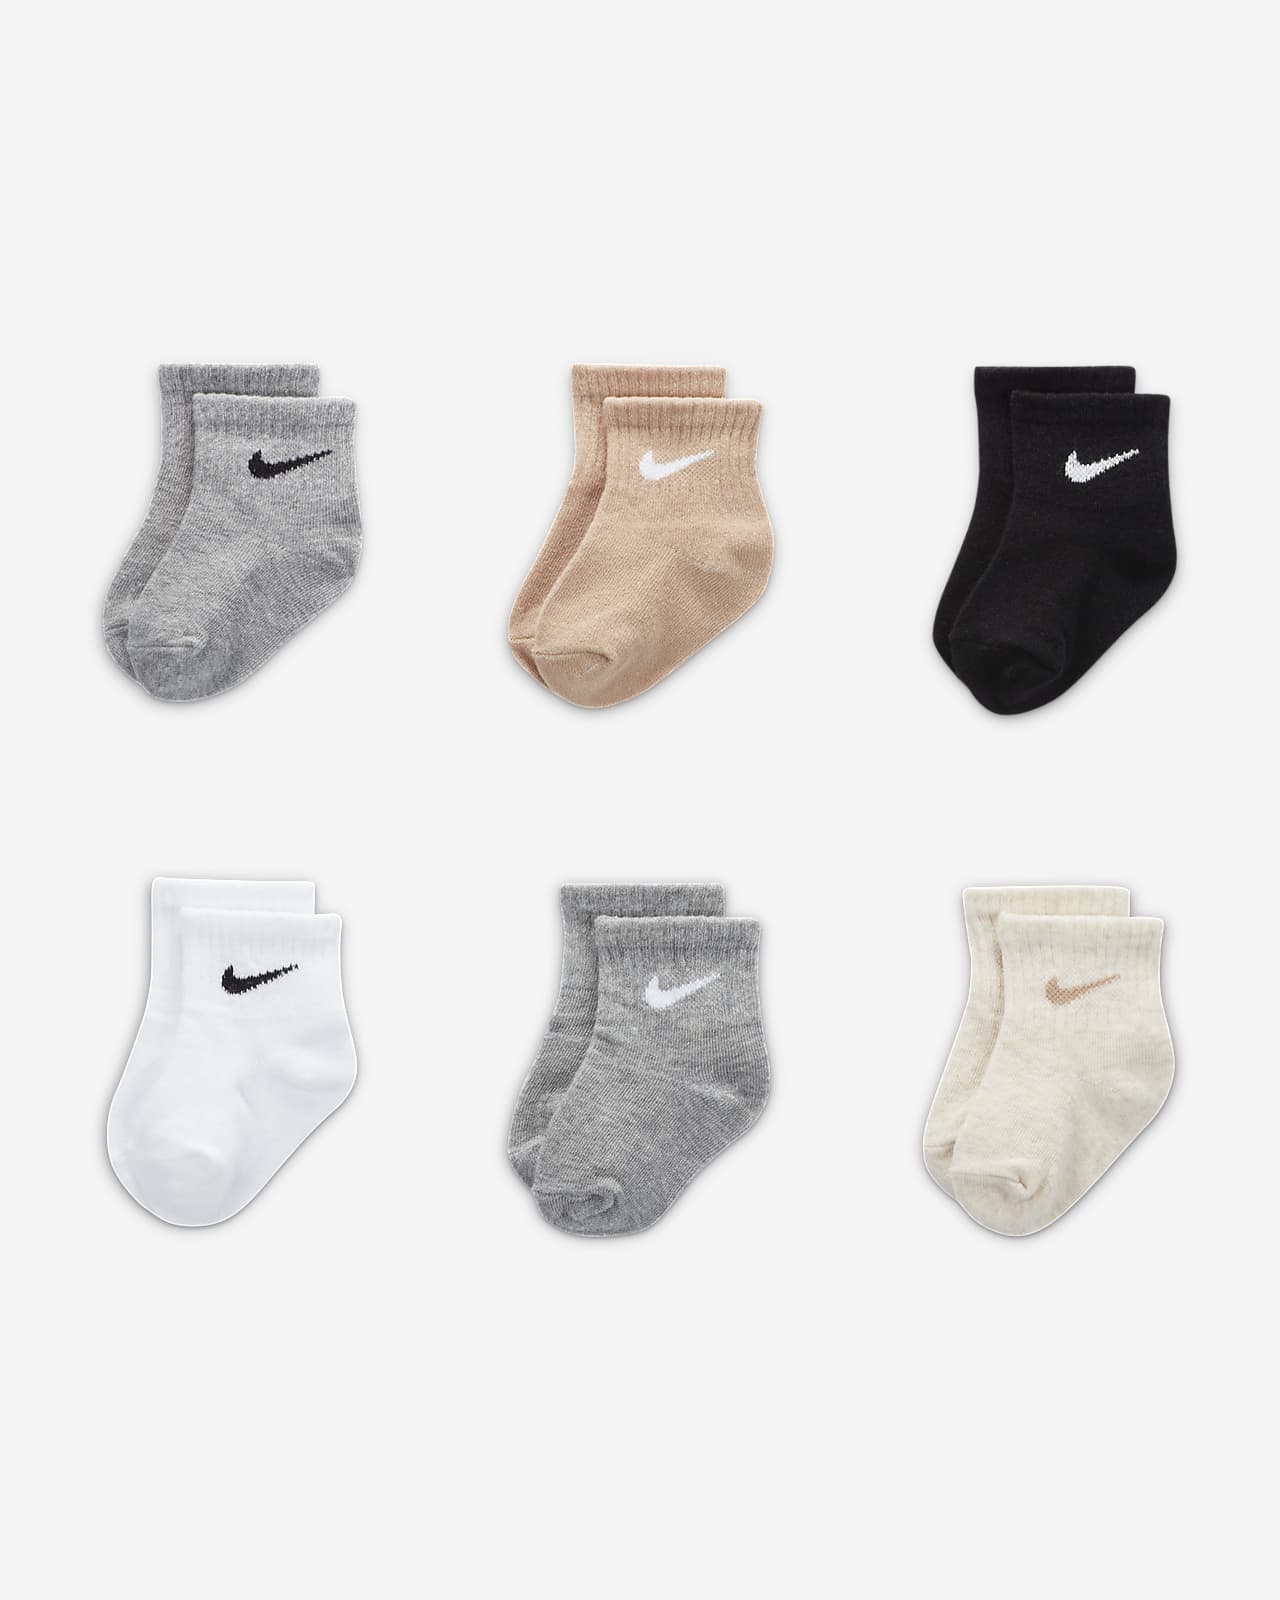 Calcetines hasta el tobillo niños pequeños Nike (6 pares). Nike.com